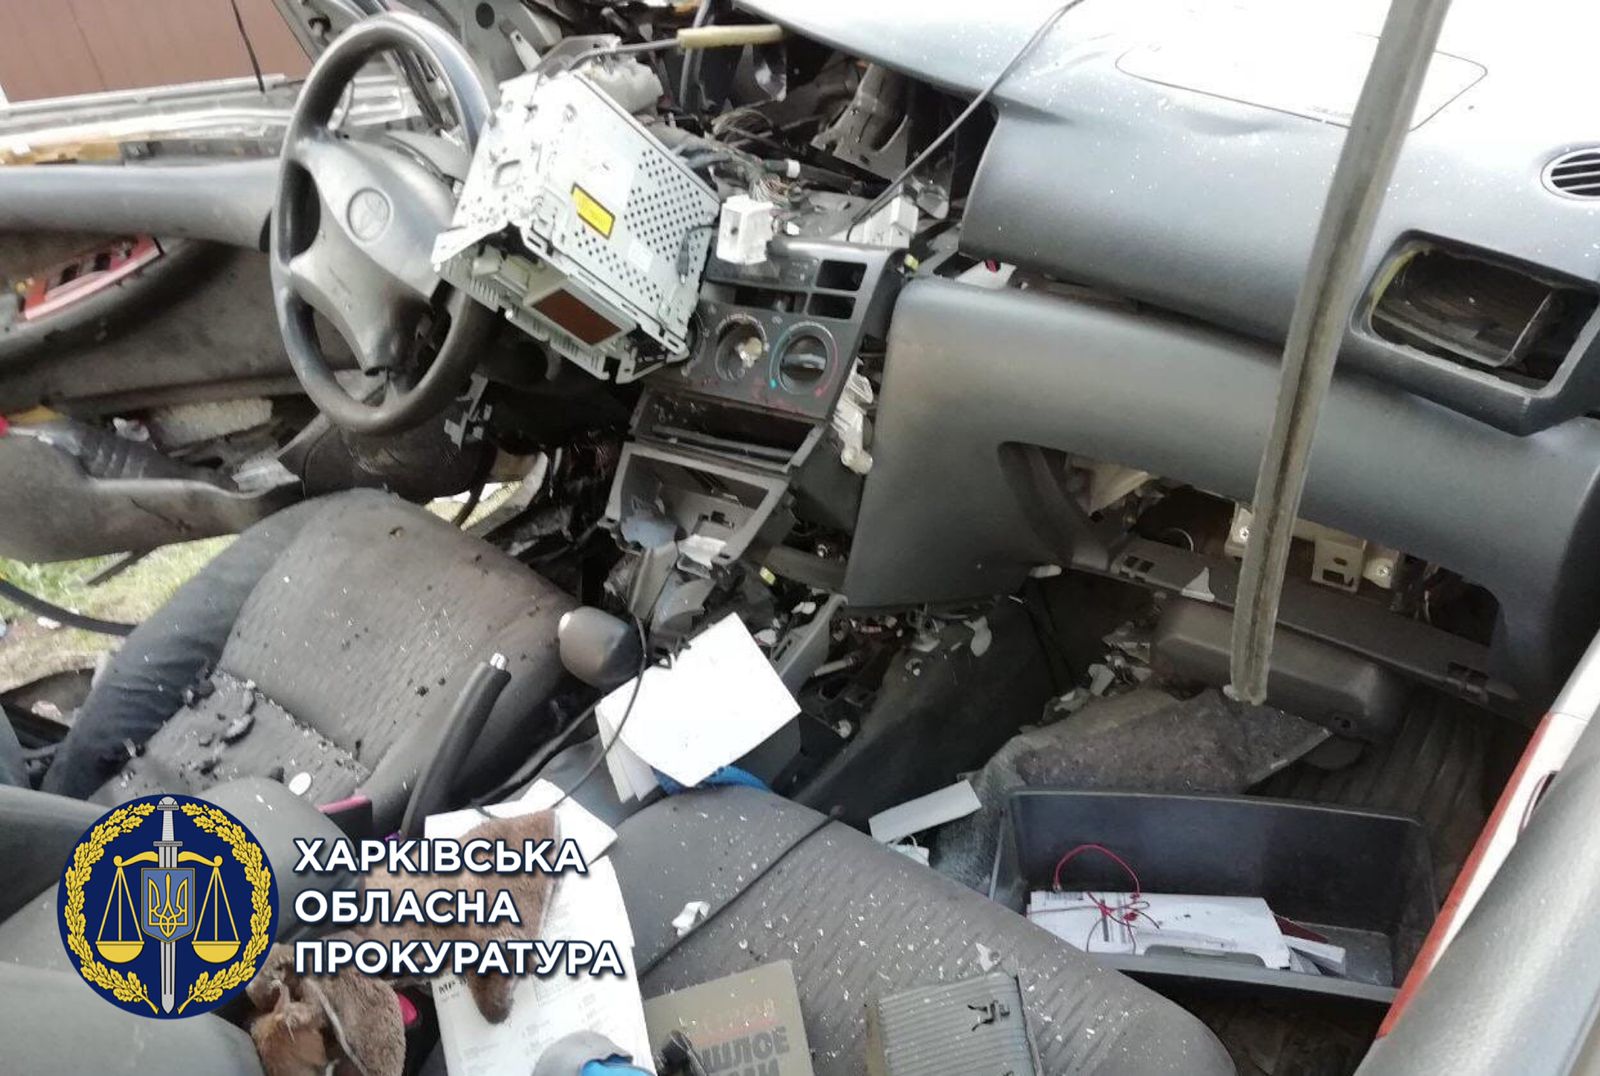 Криминал Харьков: Осужден мужчина, взорвавший такси вместе с водителем